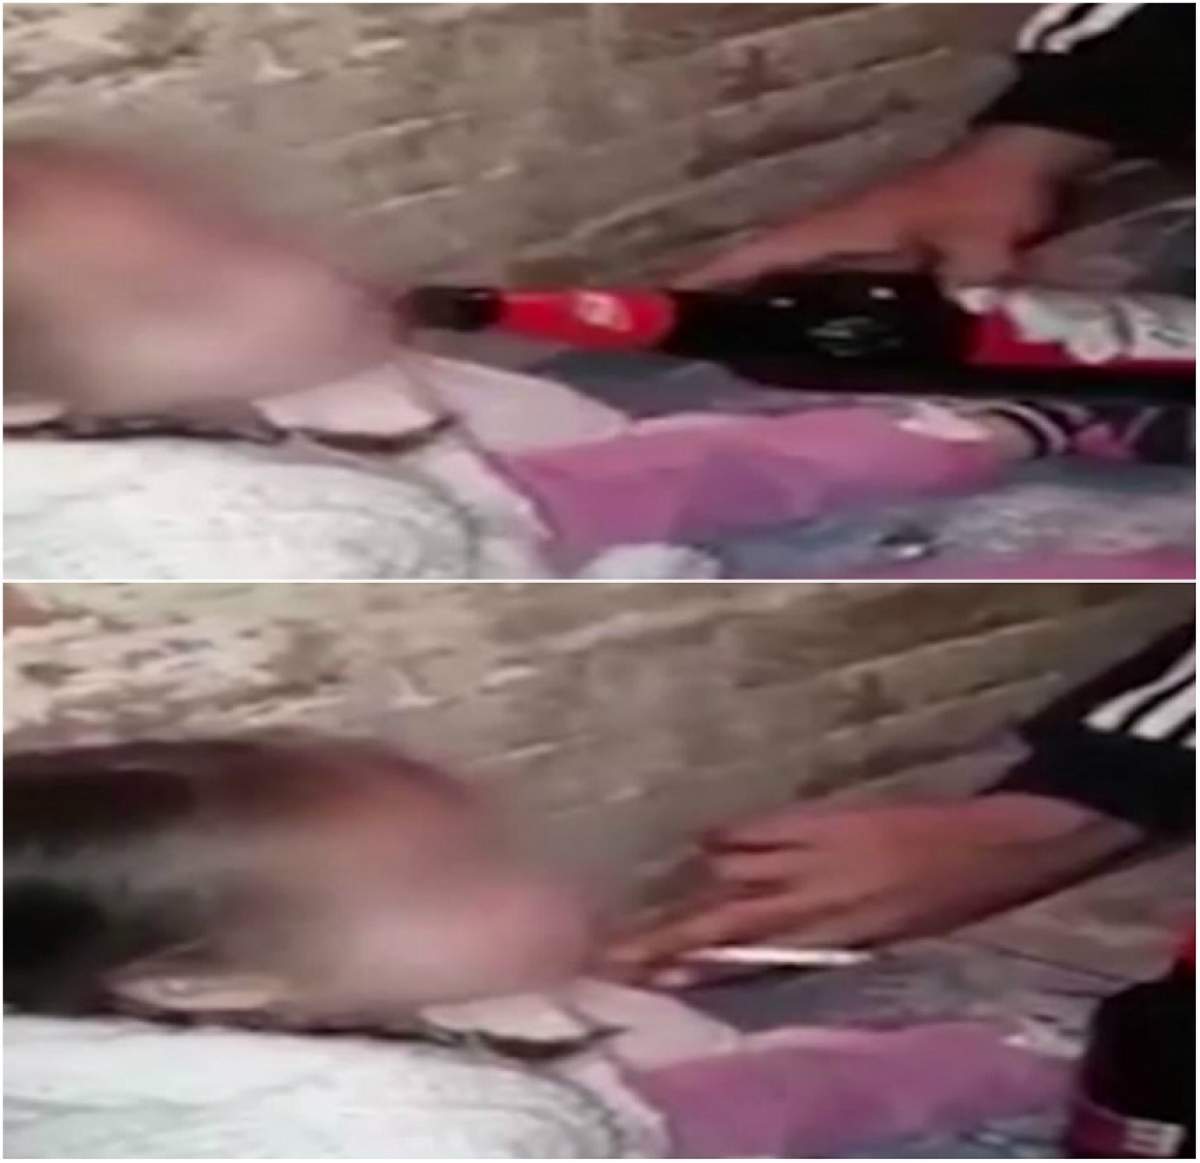 VIDEO / Șocant! O fetiță este forțată de părinții ei să bea alcool și să consume droguri